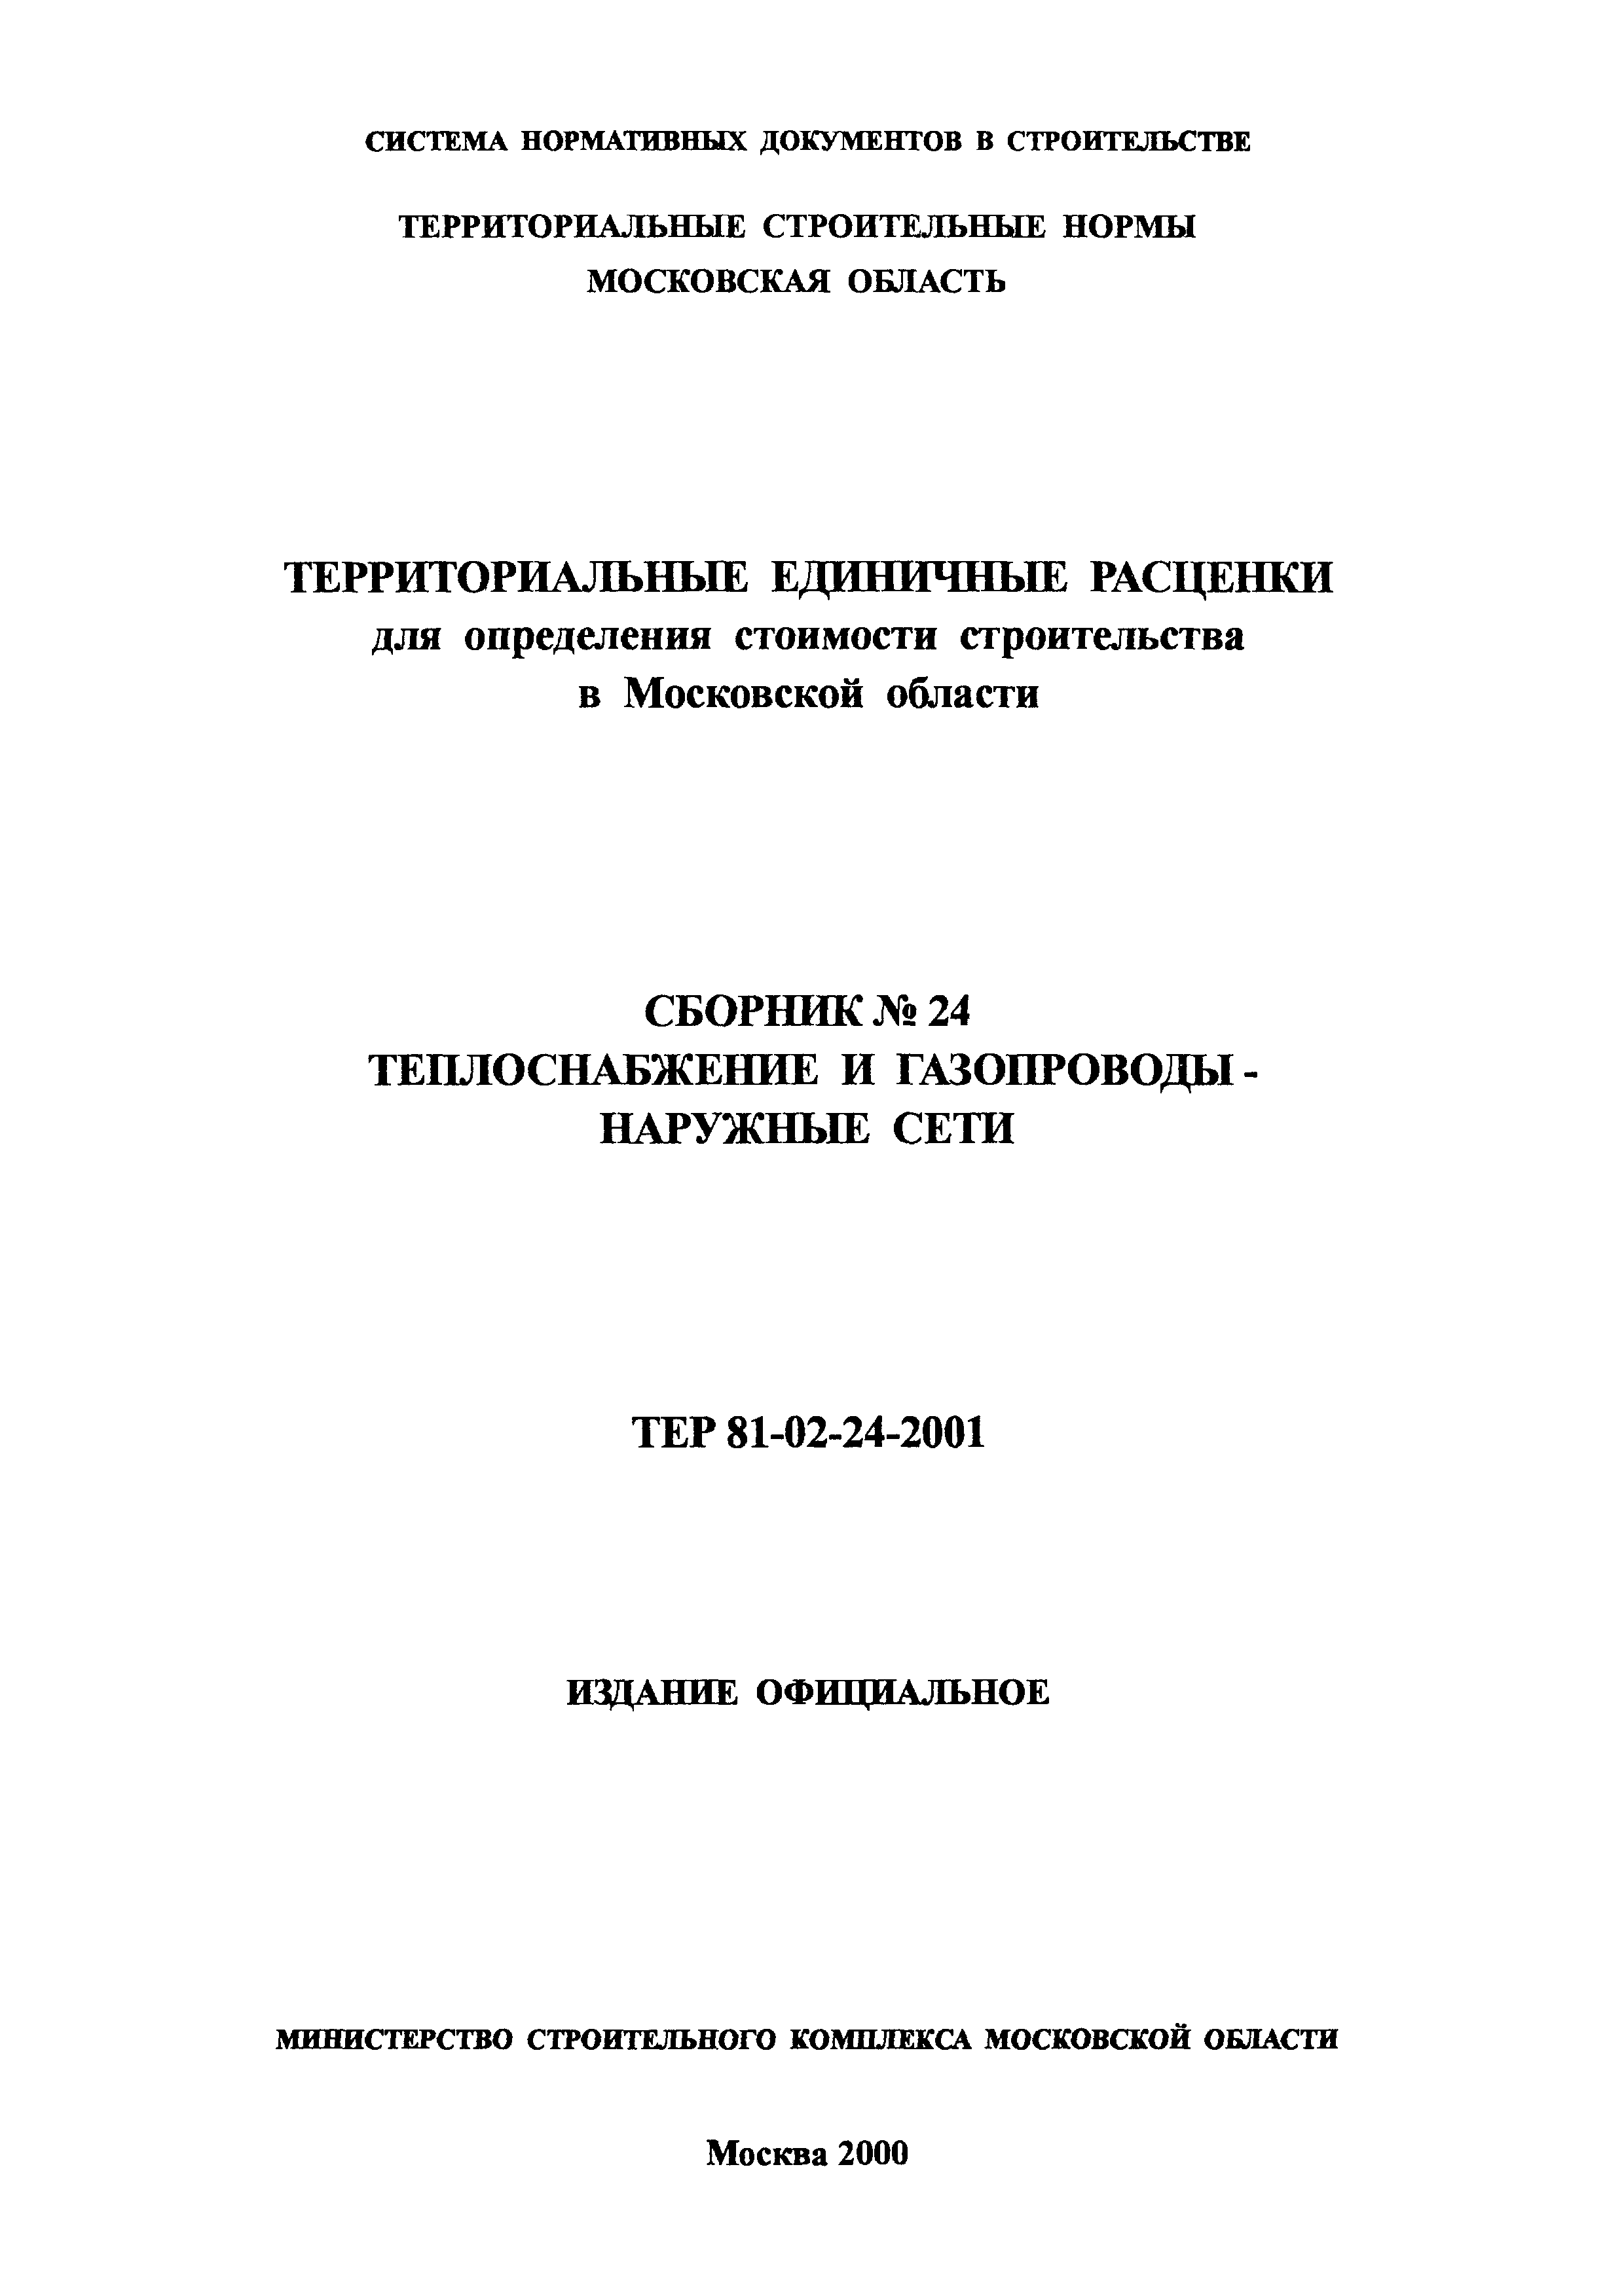 ТЕР 2001-24 Московской области